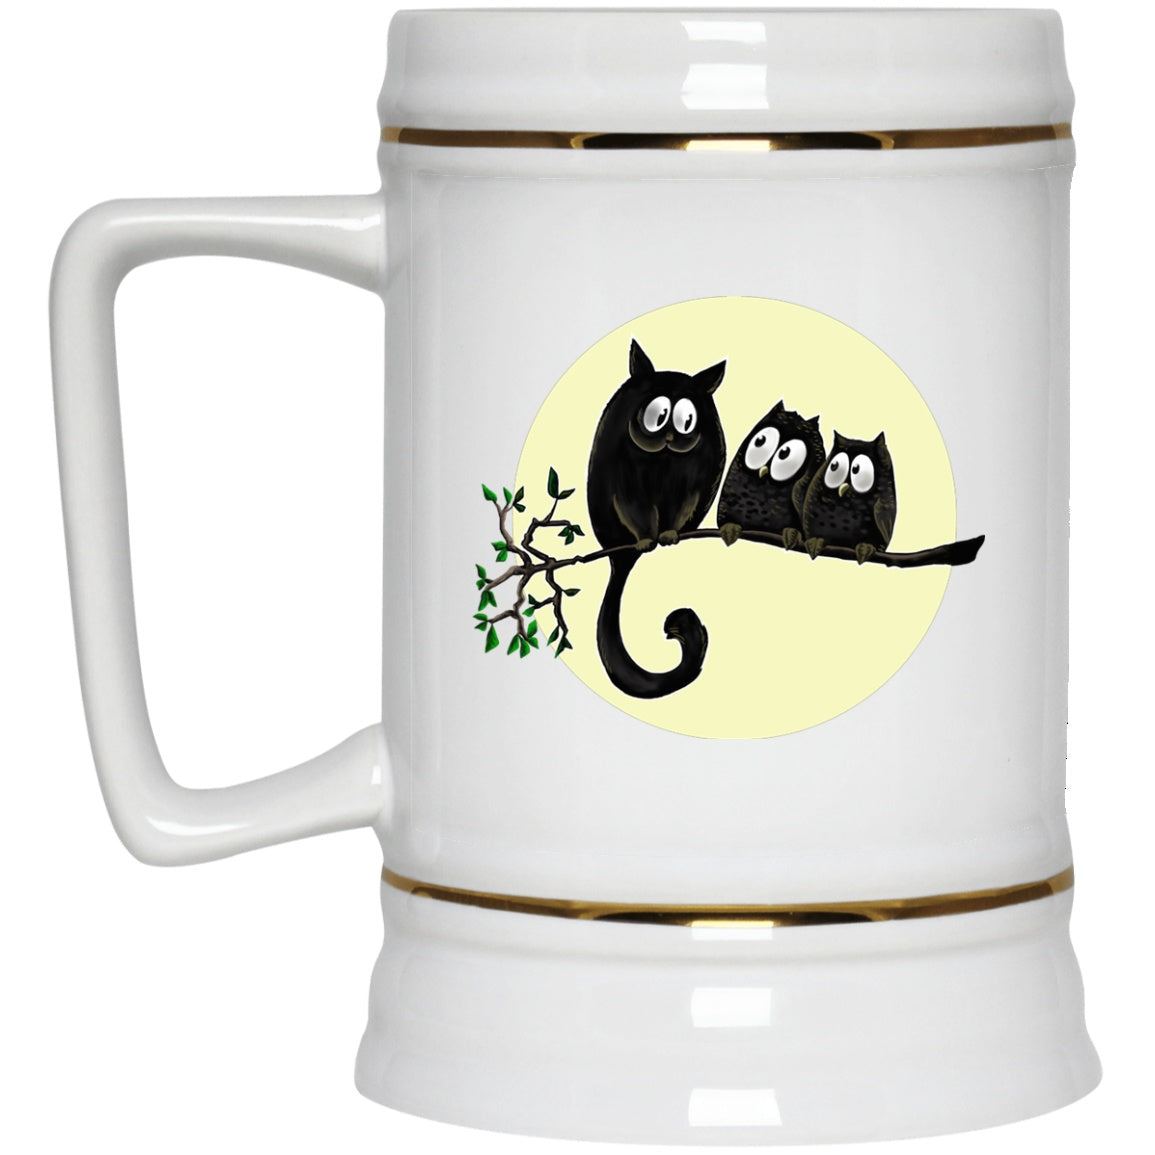 Cat Owls Mug Funny Halloween White Mugs - GoneBold.gift